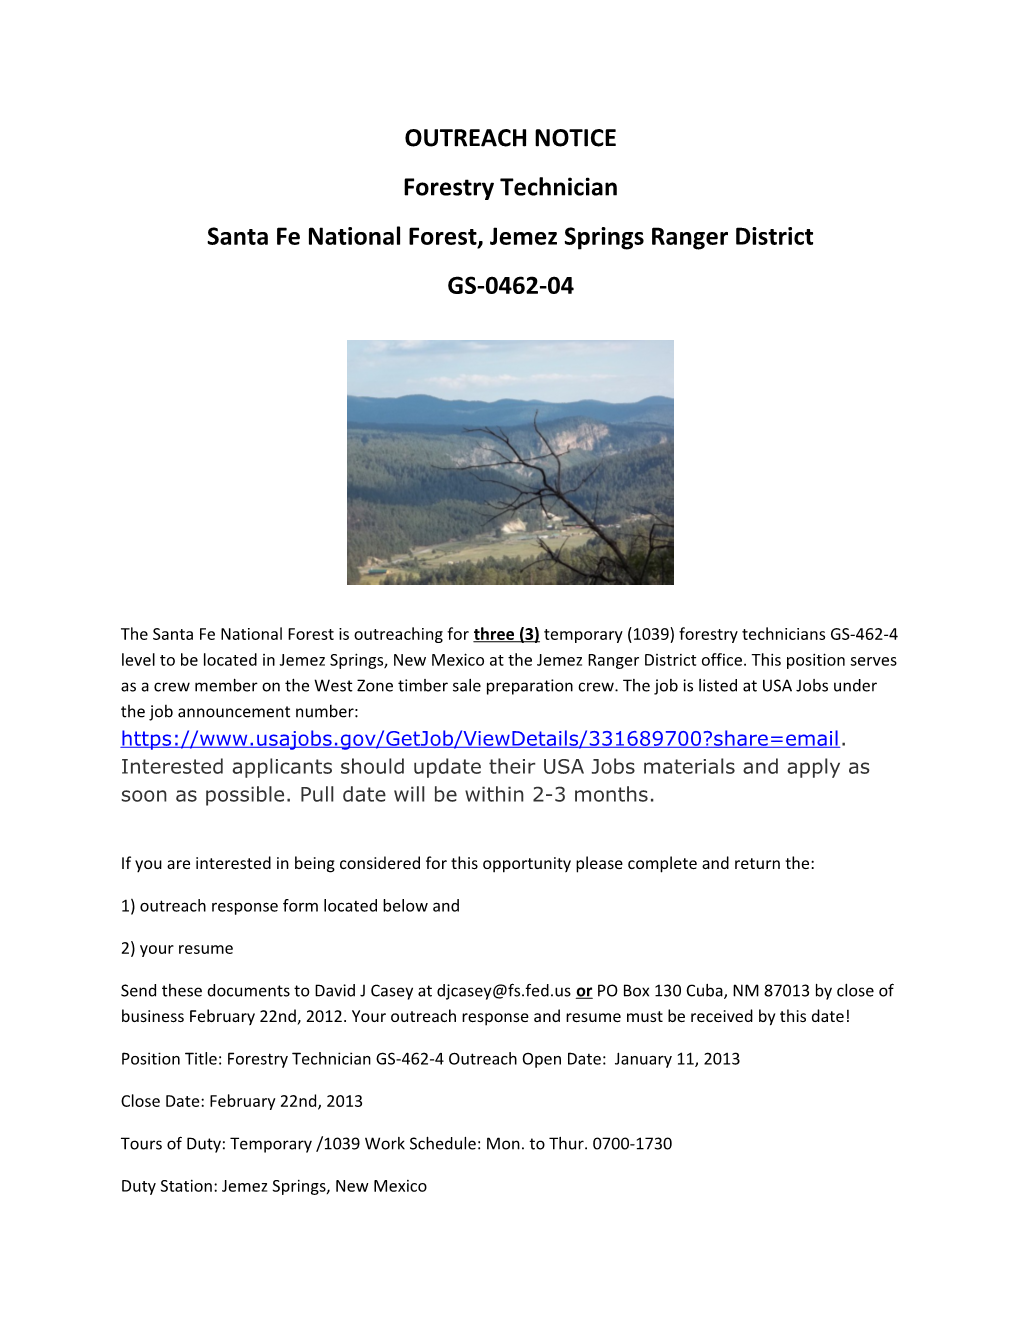 Santa Fe National Forest, Jemez Springs Ranger District